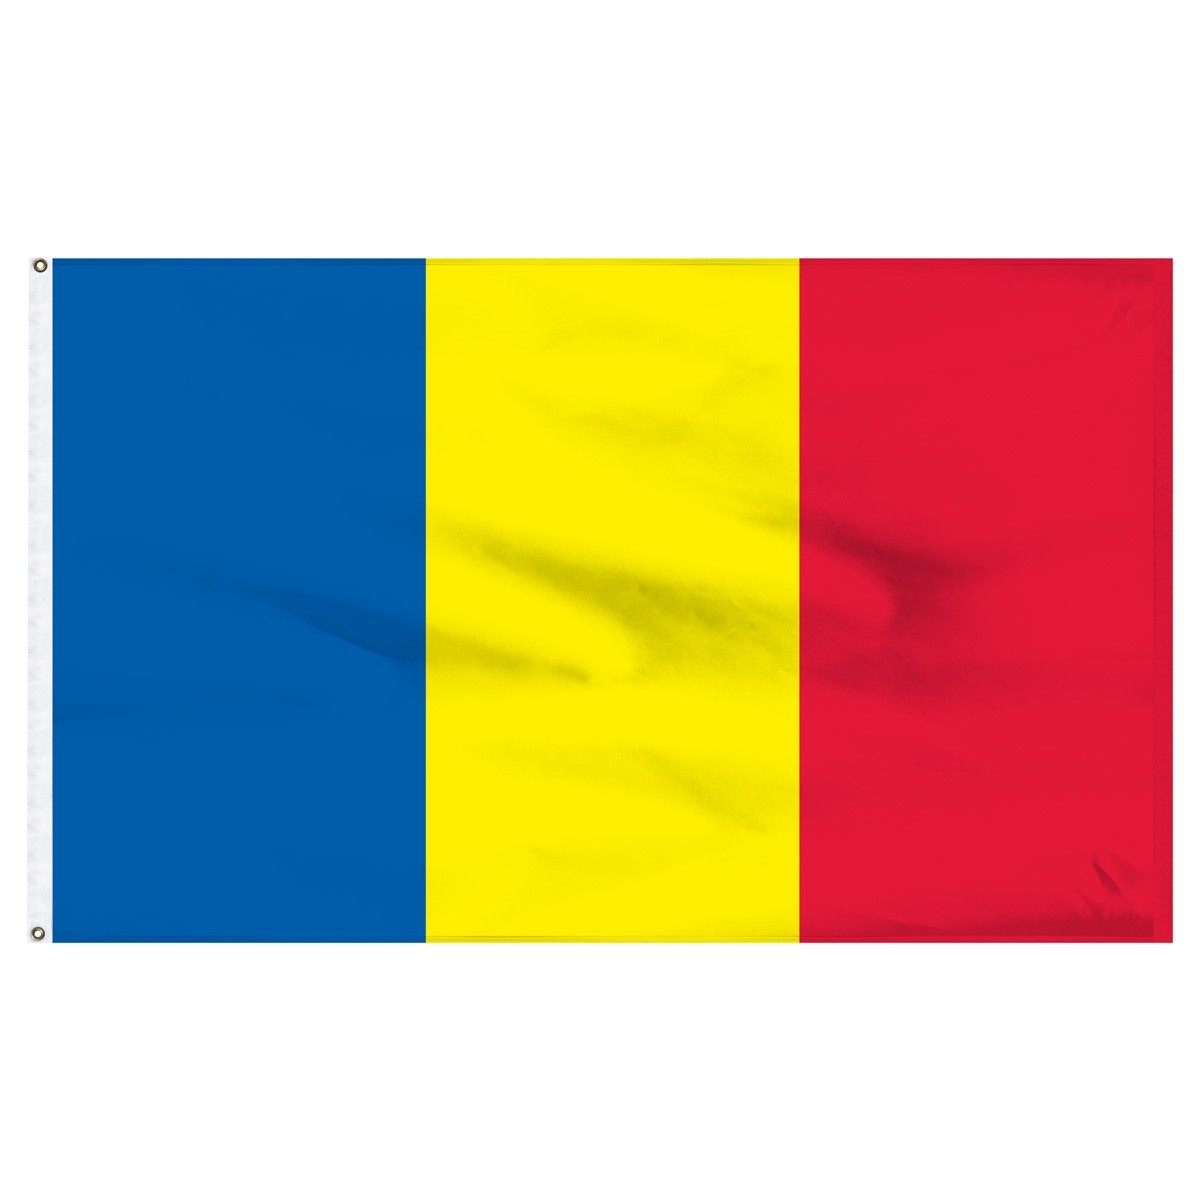 Romania 4' x 6' Outdoor Nylon Flag